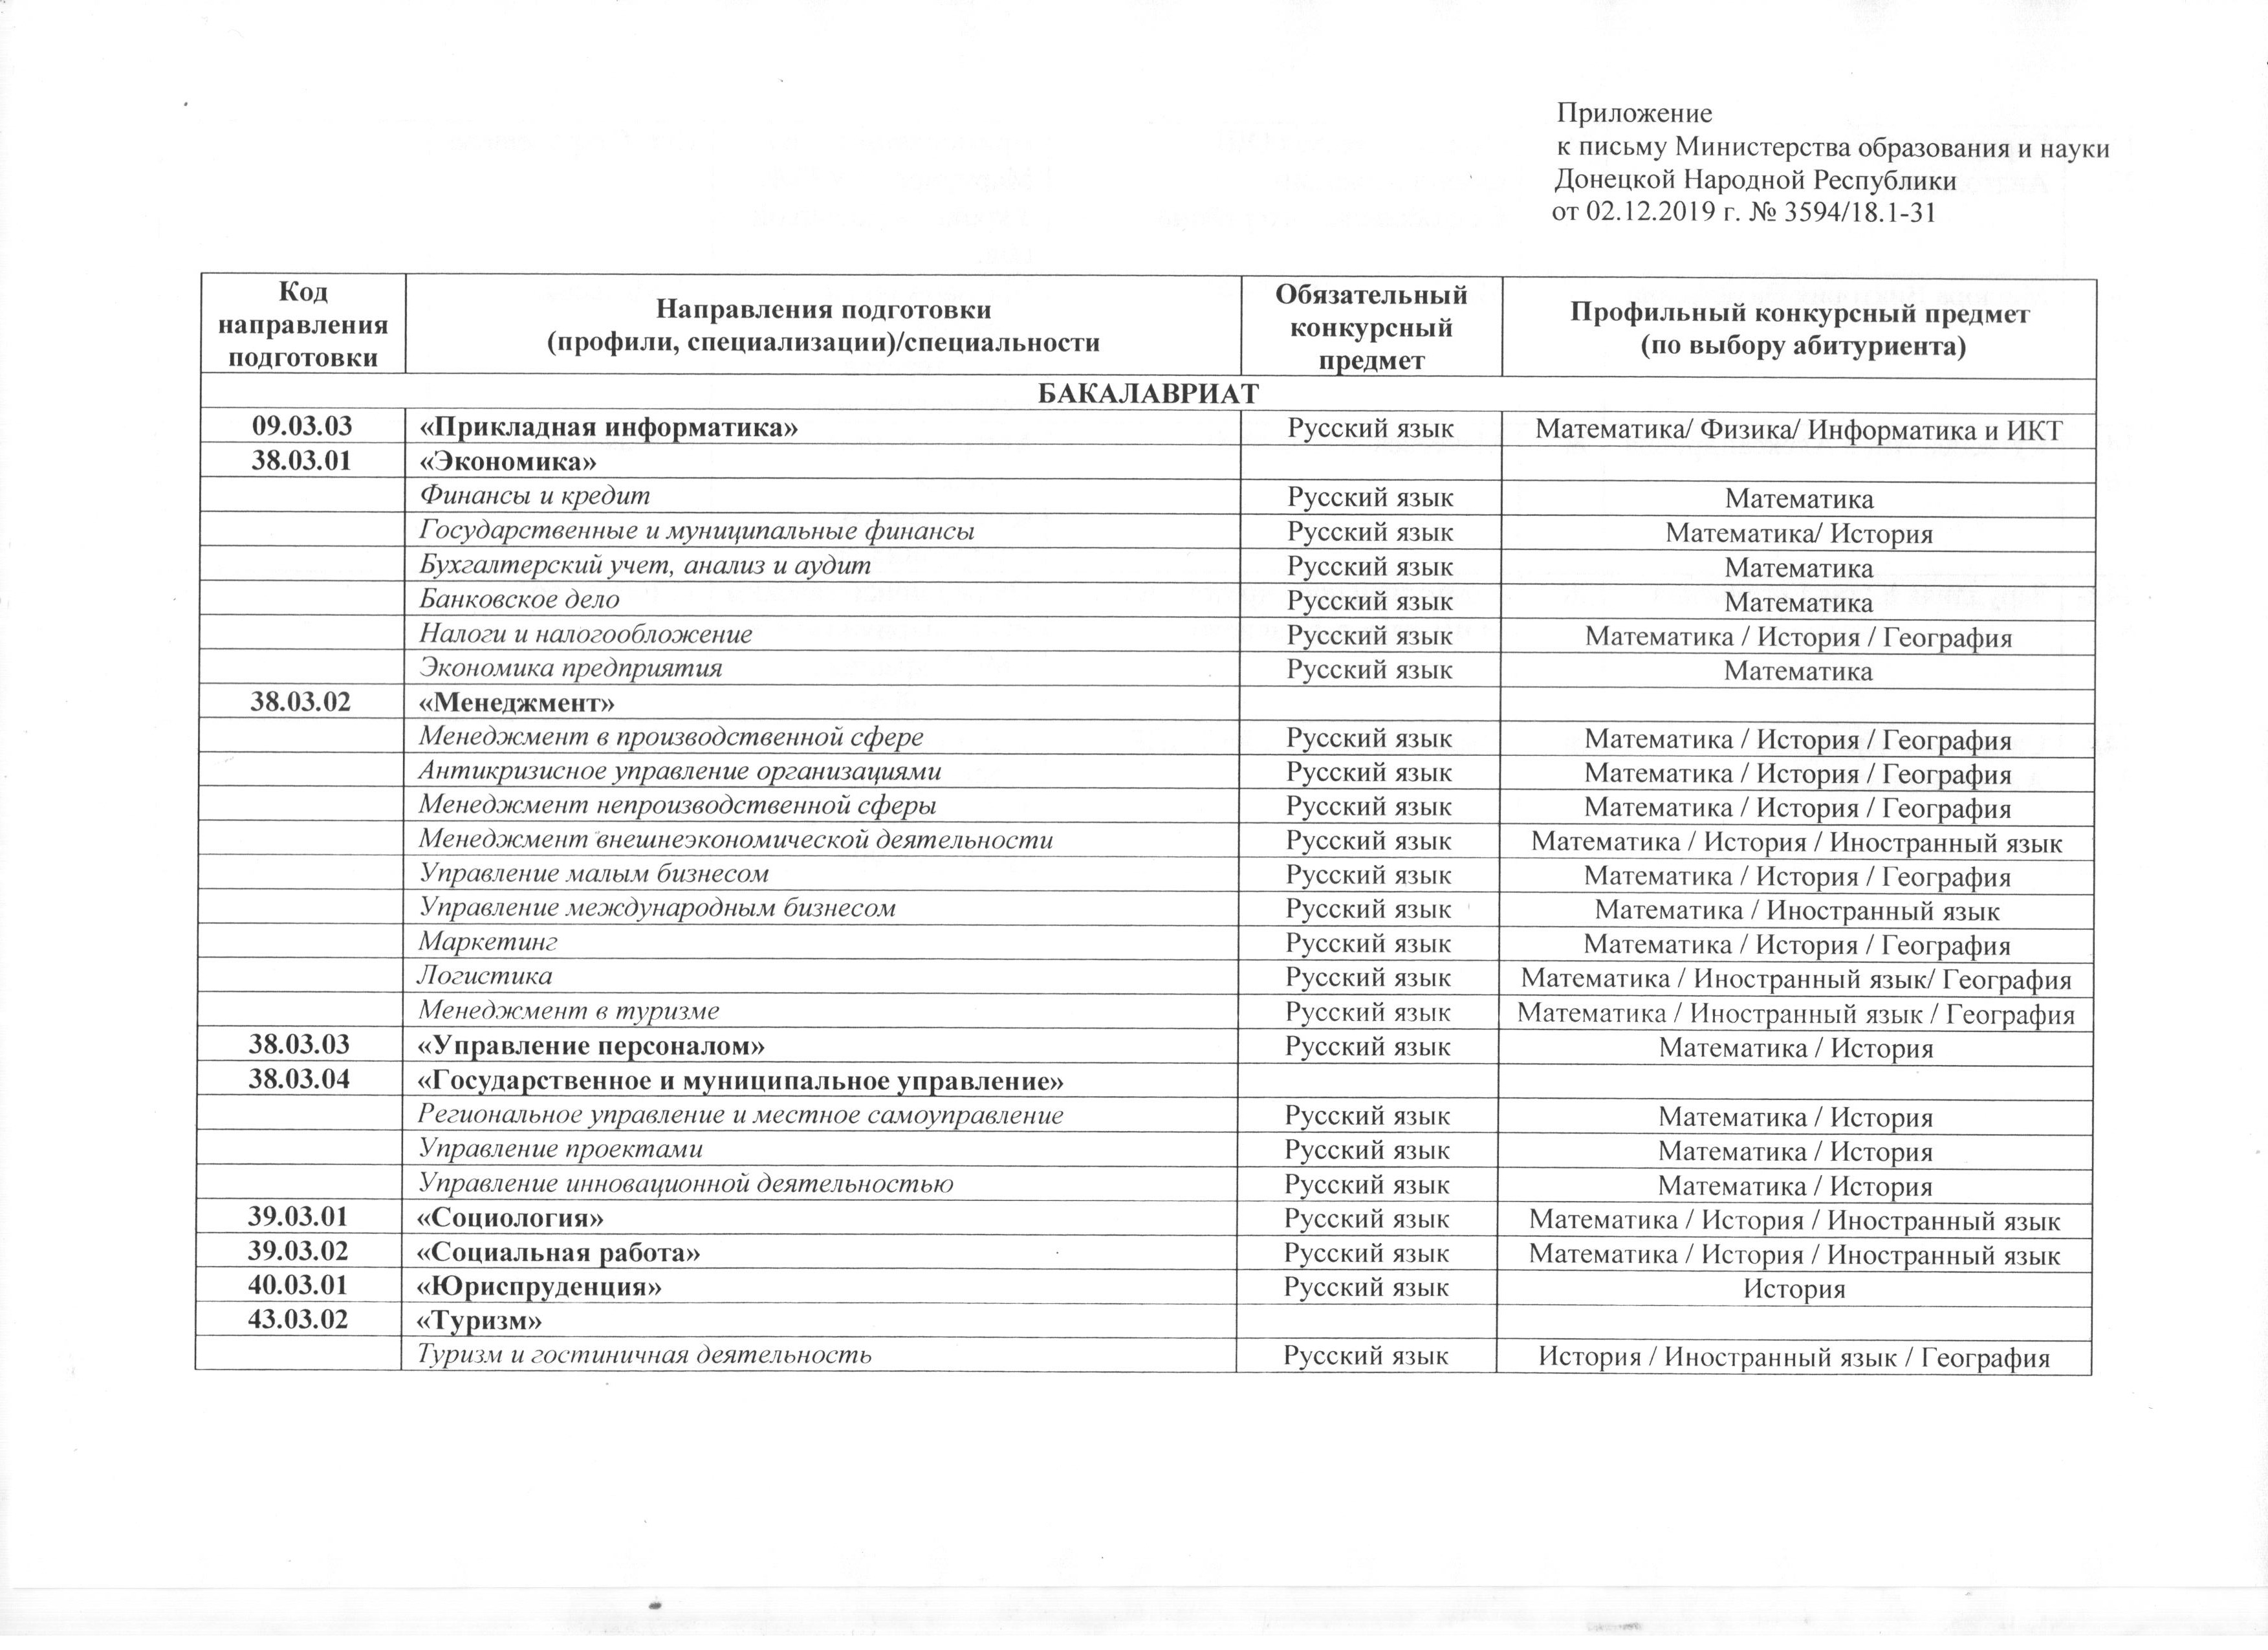 Списки викторины на выборах челябинск